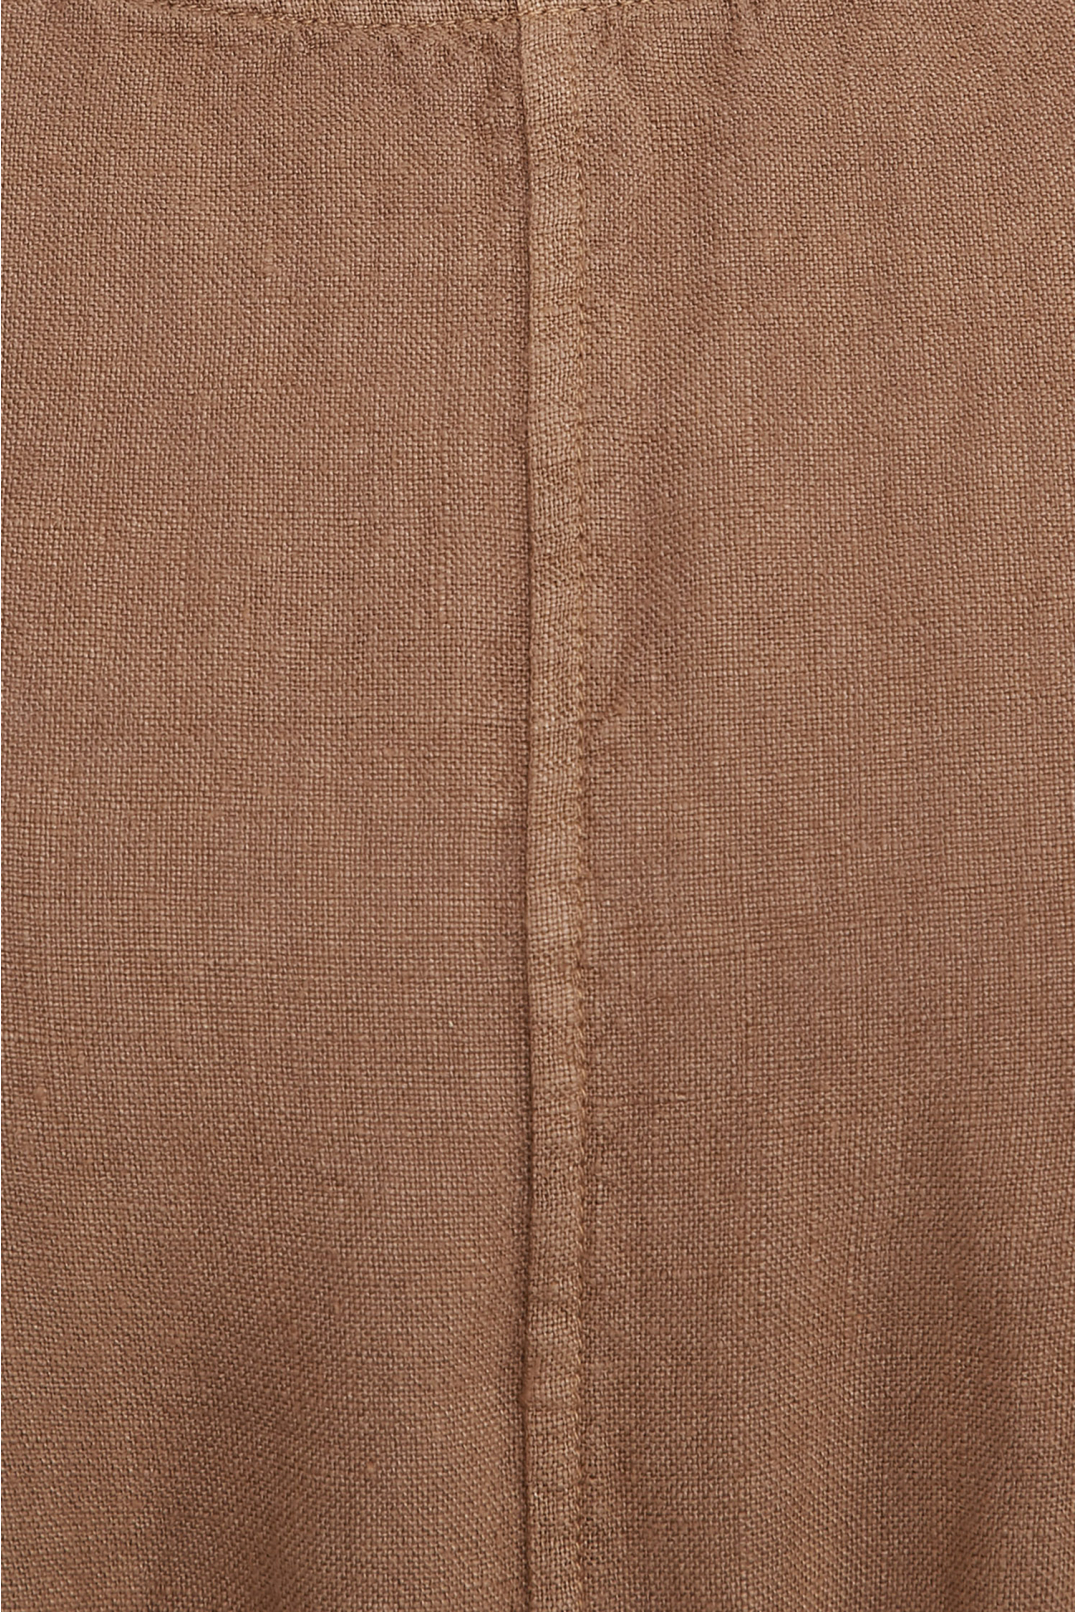 Жіночий коричневий лляний сарафан - 4